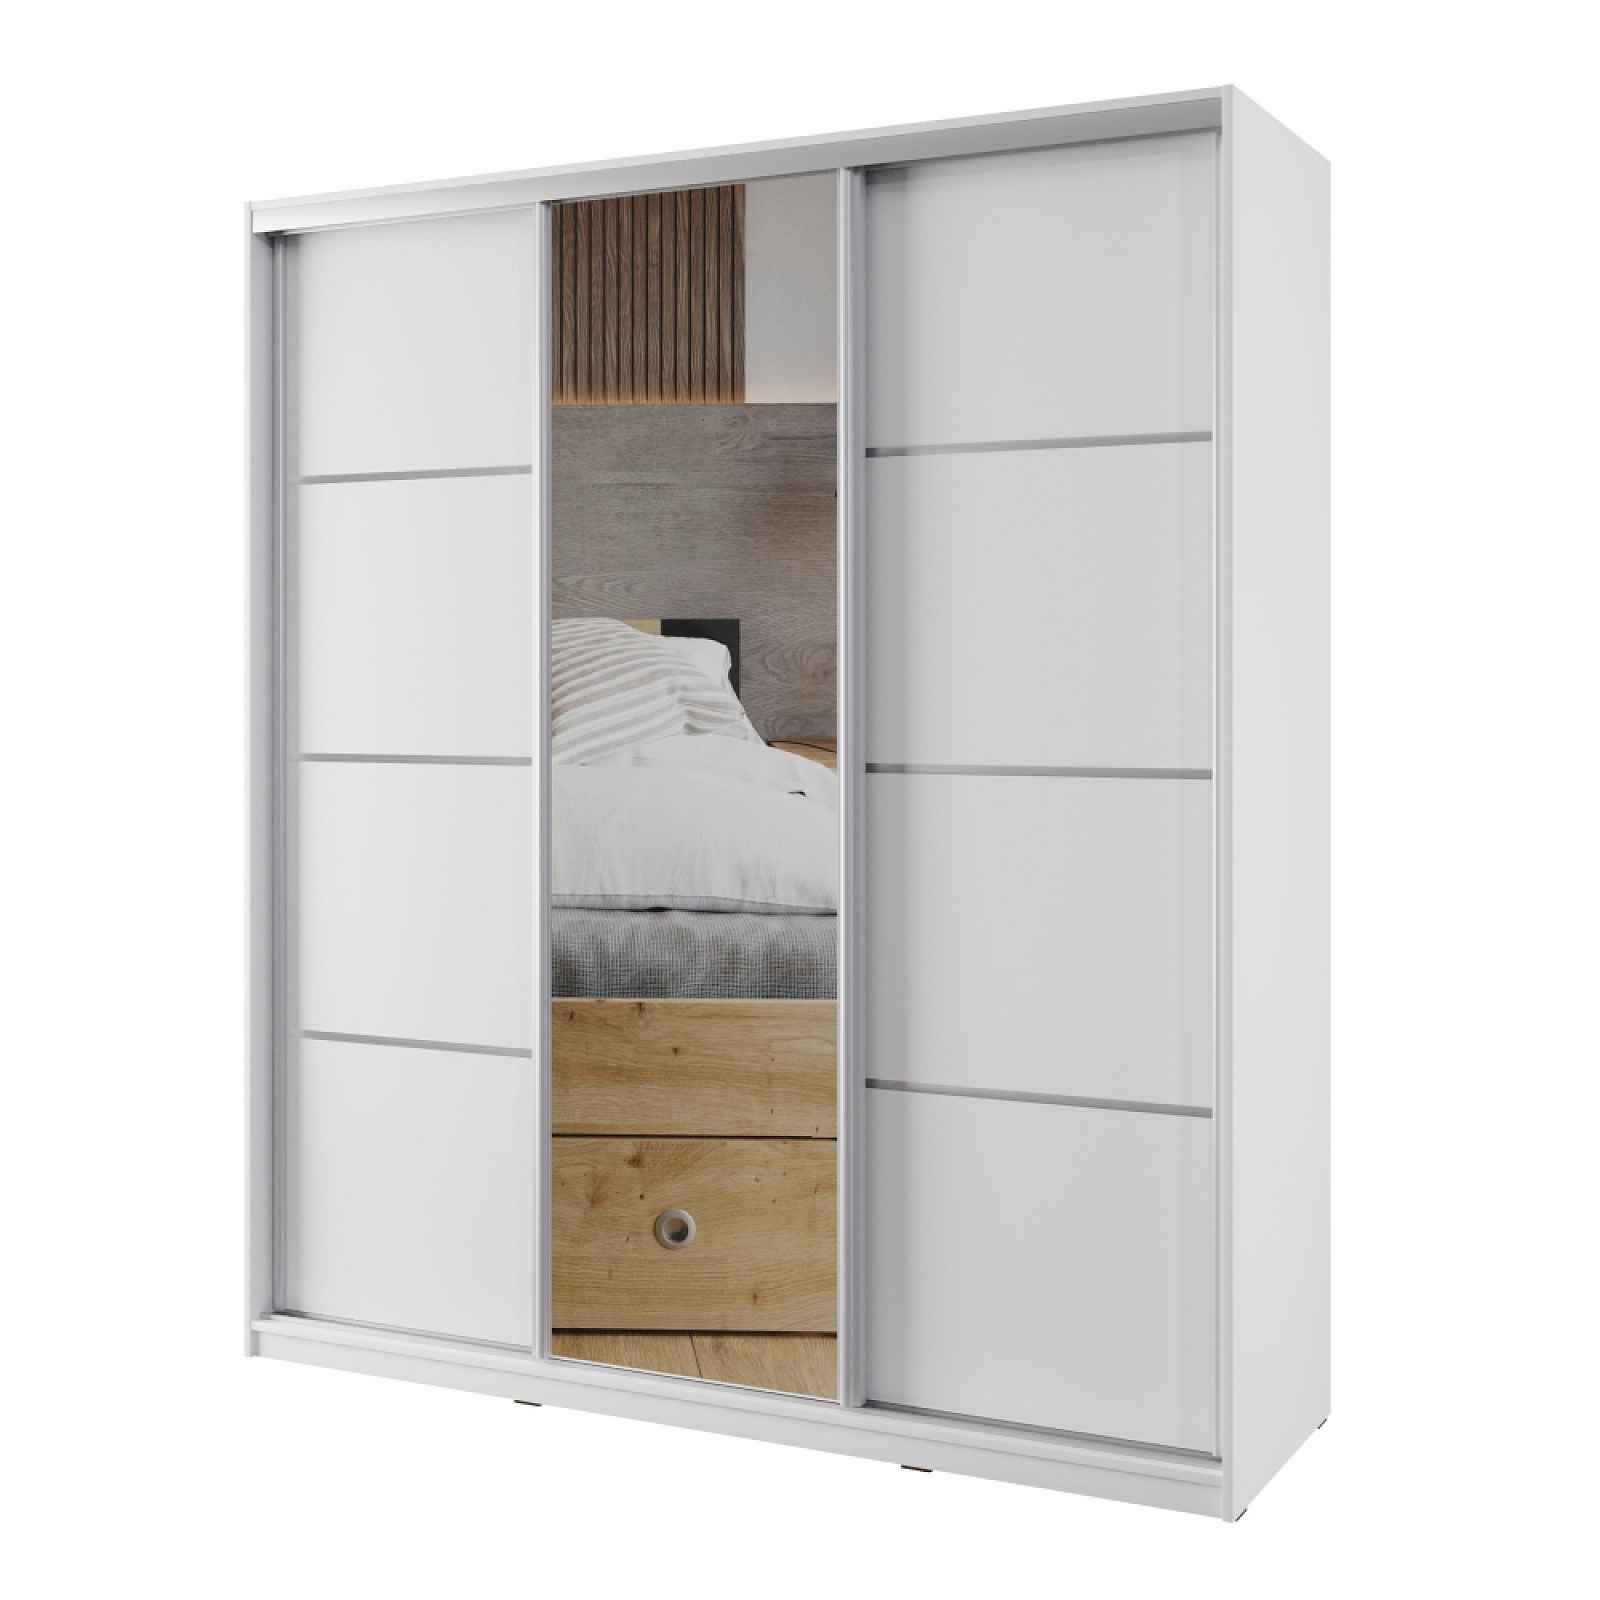 Šatní skříň NEJBY BARNABA 180 cm s posuvnými dveřmi, zrcadlem, 4 šuplíky a 2 šatními tyčemi, bílá